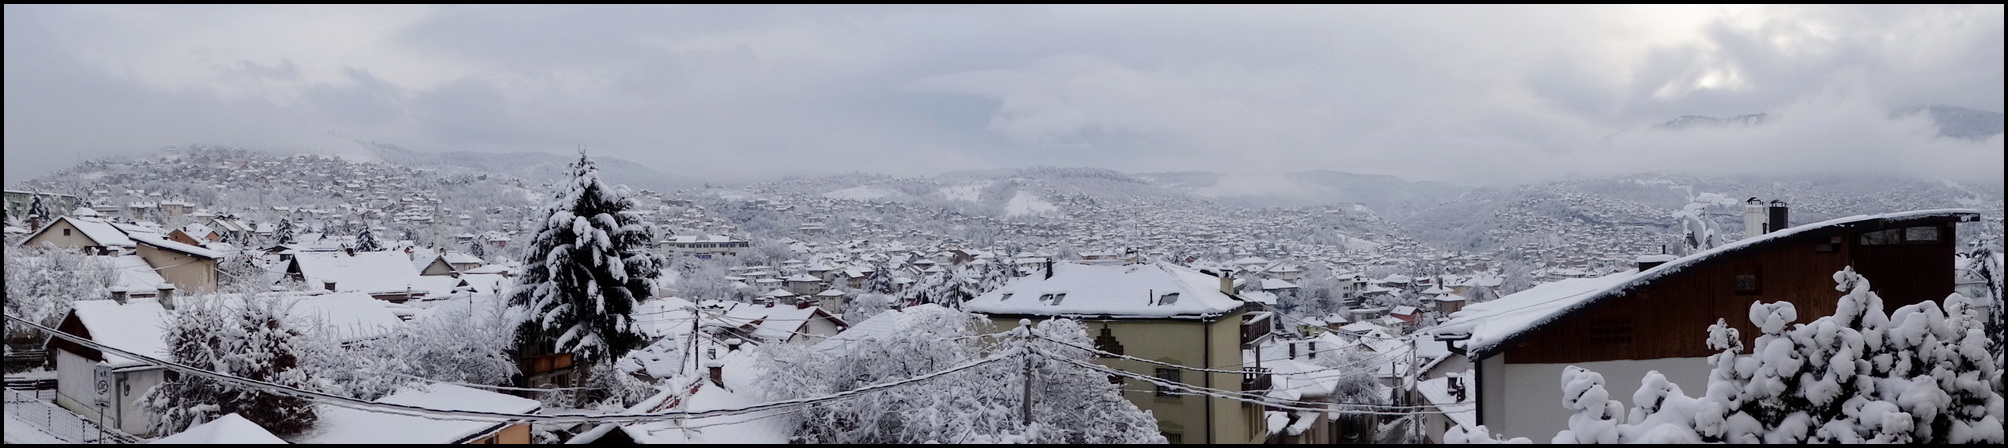 Winter wonderland Sarajevo 5